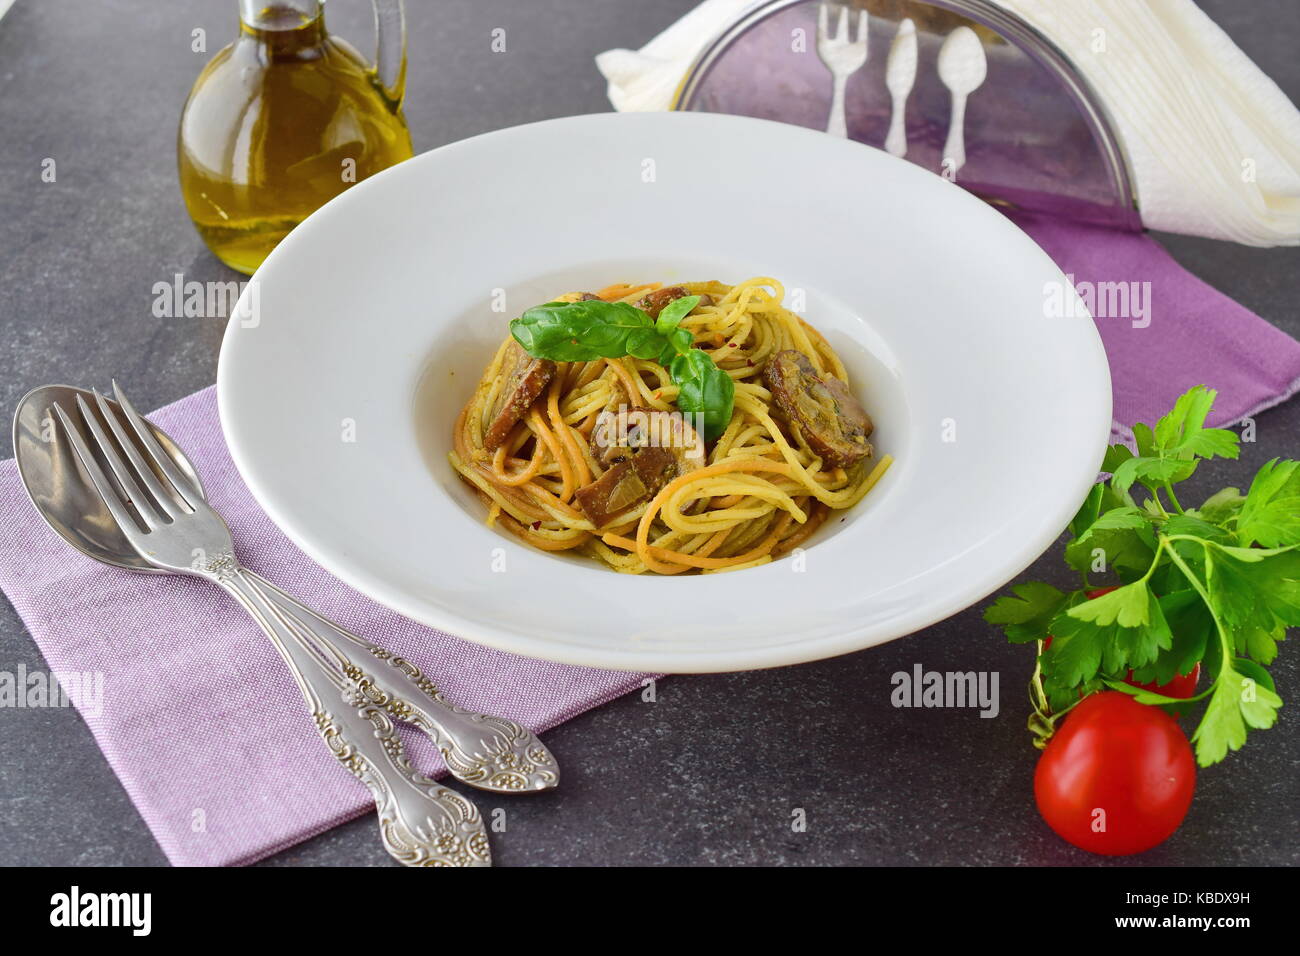 Pasta con champiñones y salsa pesto en una placa blanca sobre fondo abstracto. Estilo de vida italiano. Comer sano concepto Foto de stock